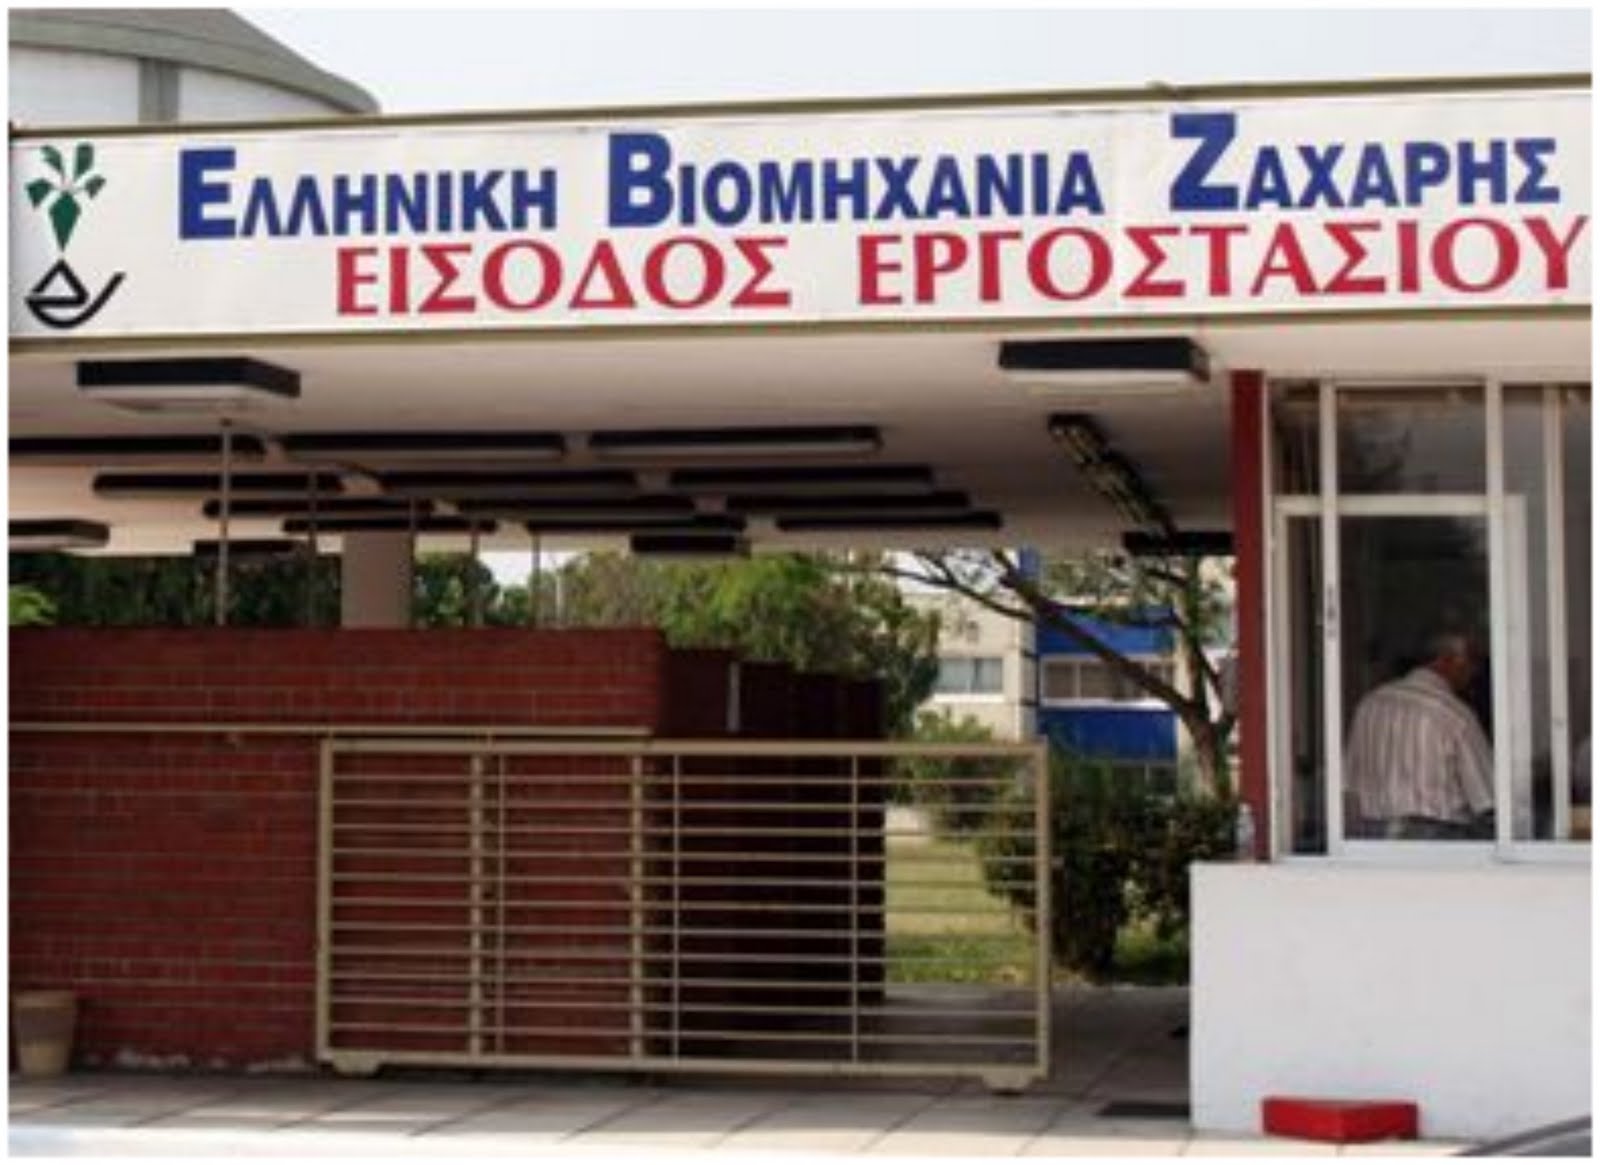 Στάση πληρωμών στην ελληνική βιομηχανία ζάχαρης καταγγέλλουν οι εργαζόμενοι